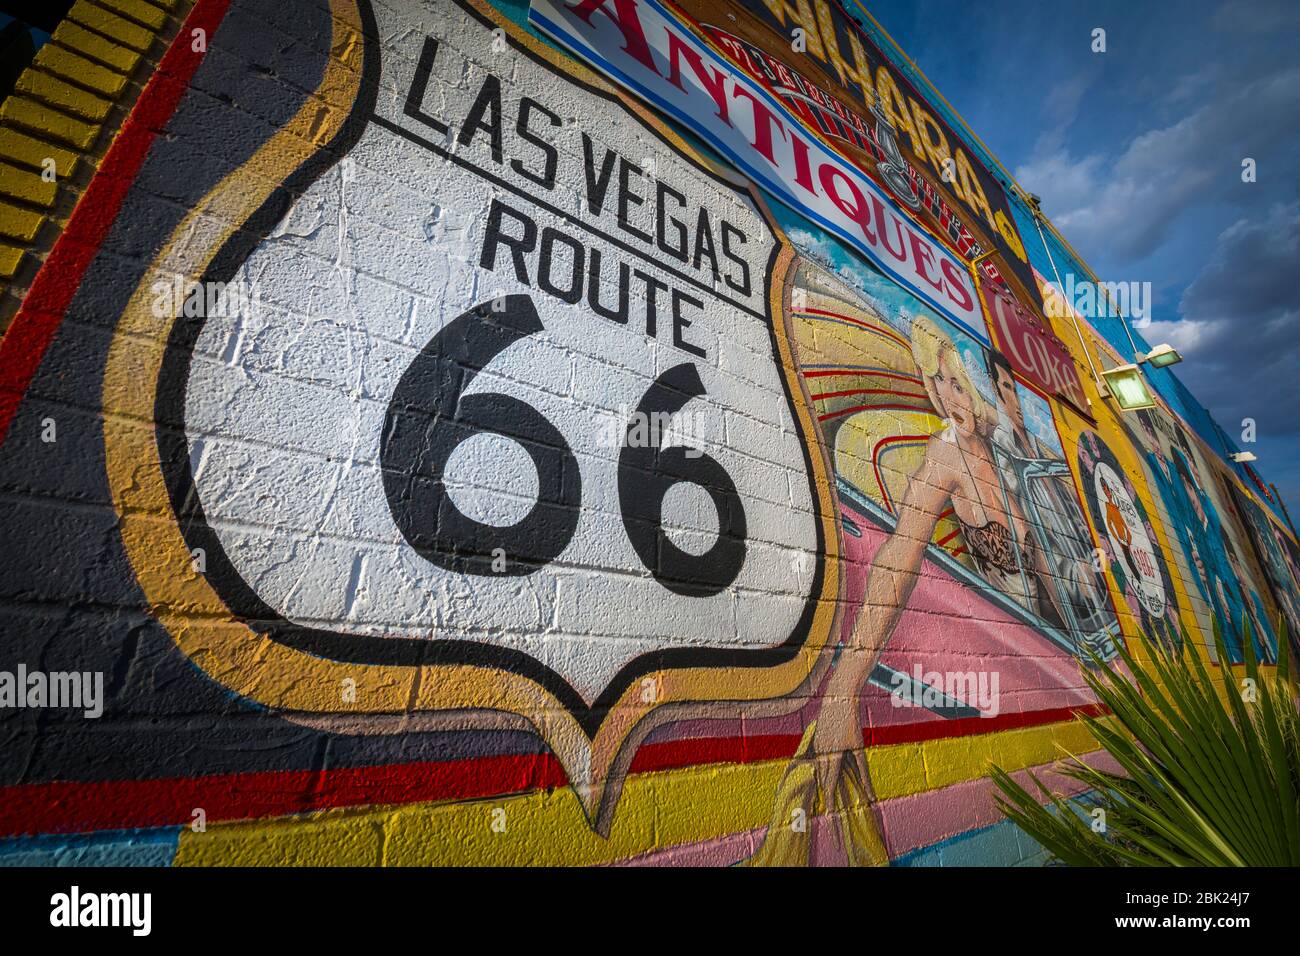 Las Vegas route 66 peinture murale sur Las Vegas Boulevard, 'le Strip', Las Vegas, Nevada, Etats-Unis, Amérique du Nord Banque D'Images